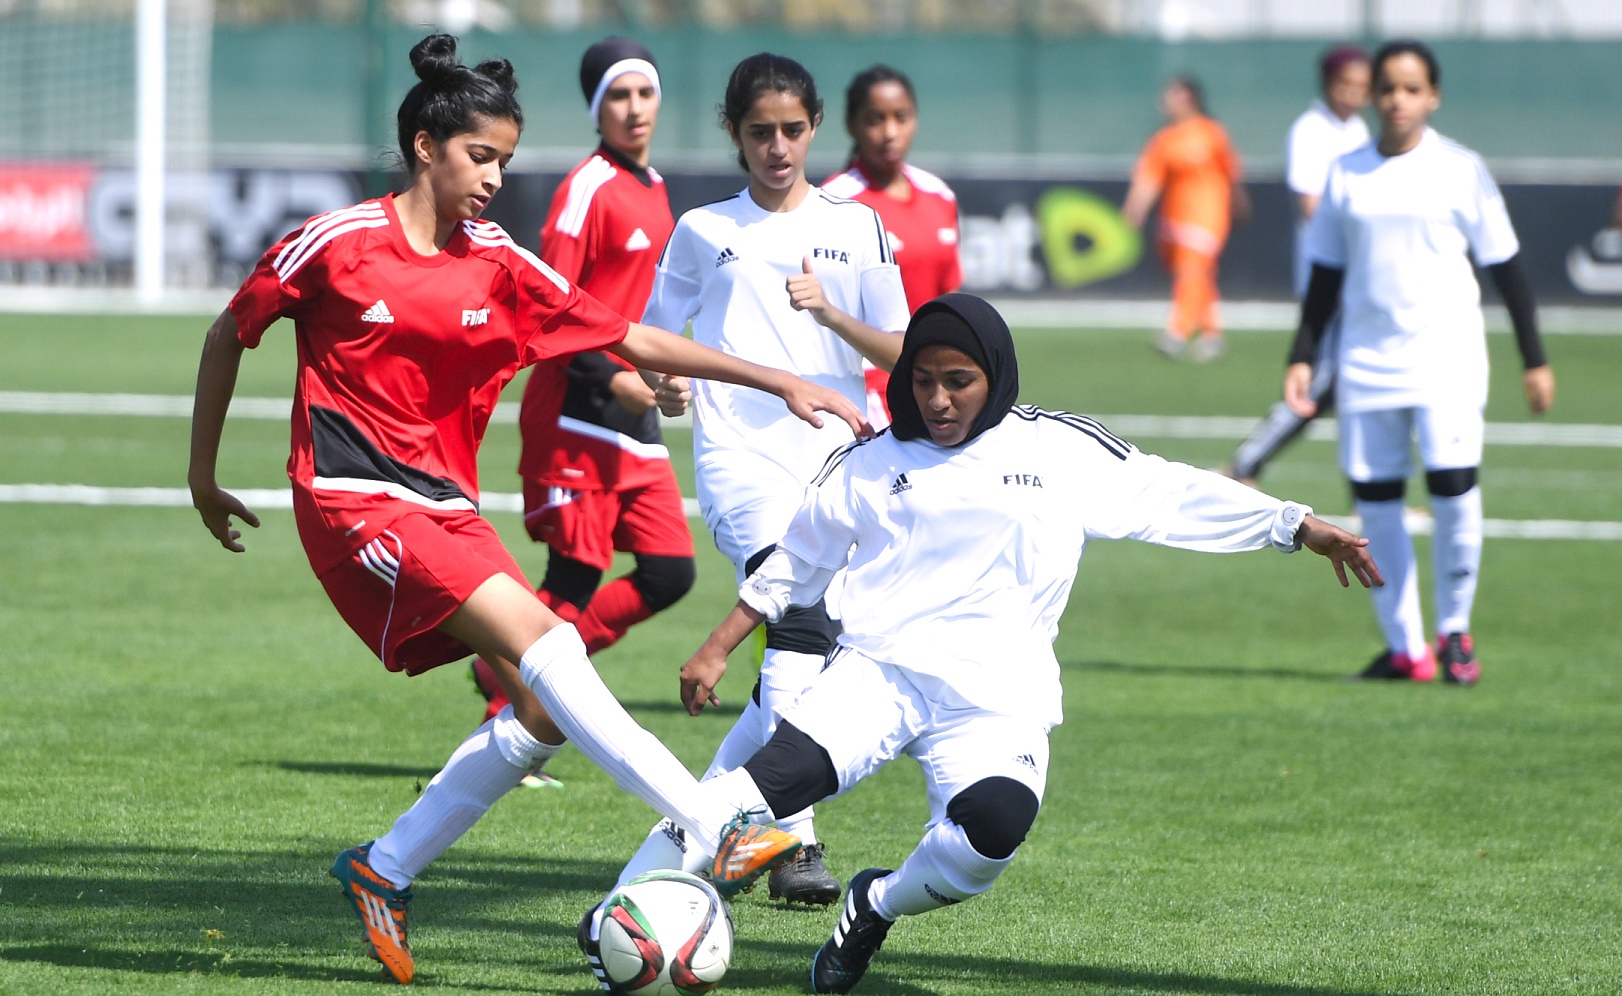 UAE Junior Football League Under 15